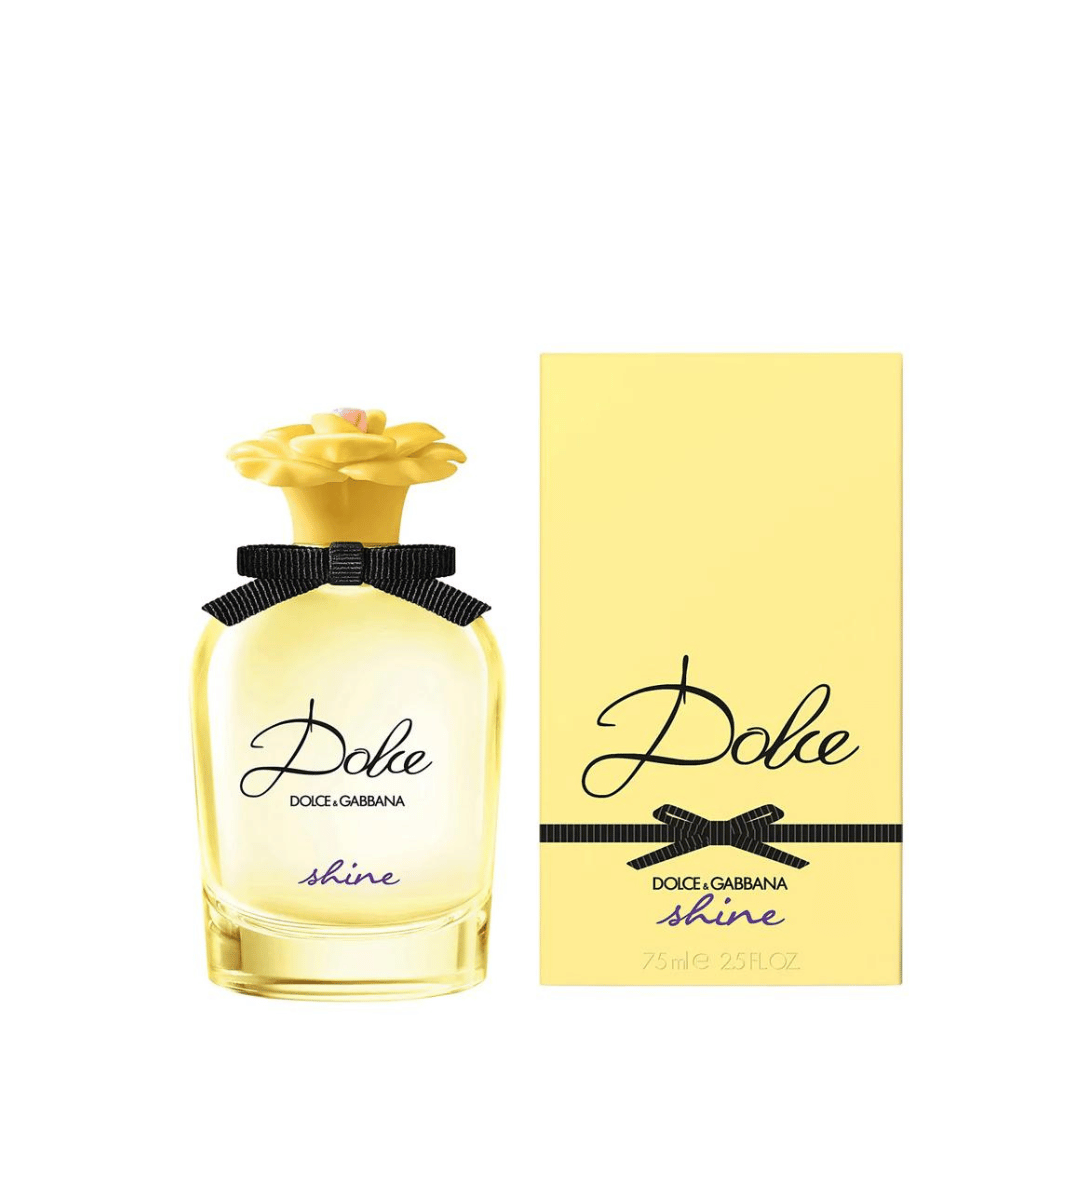 D&G Dolce Shine Eau de Parfum